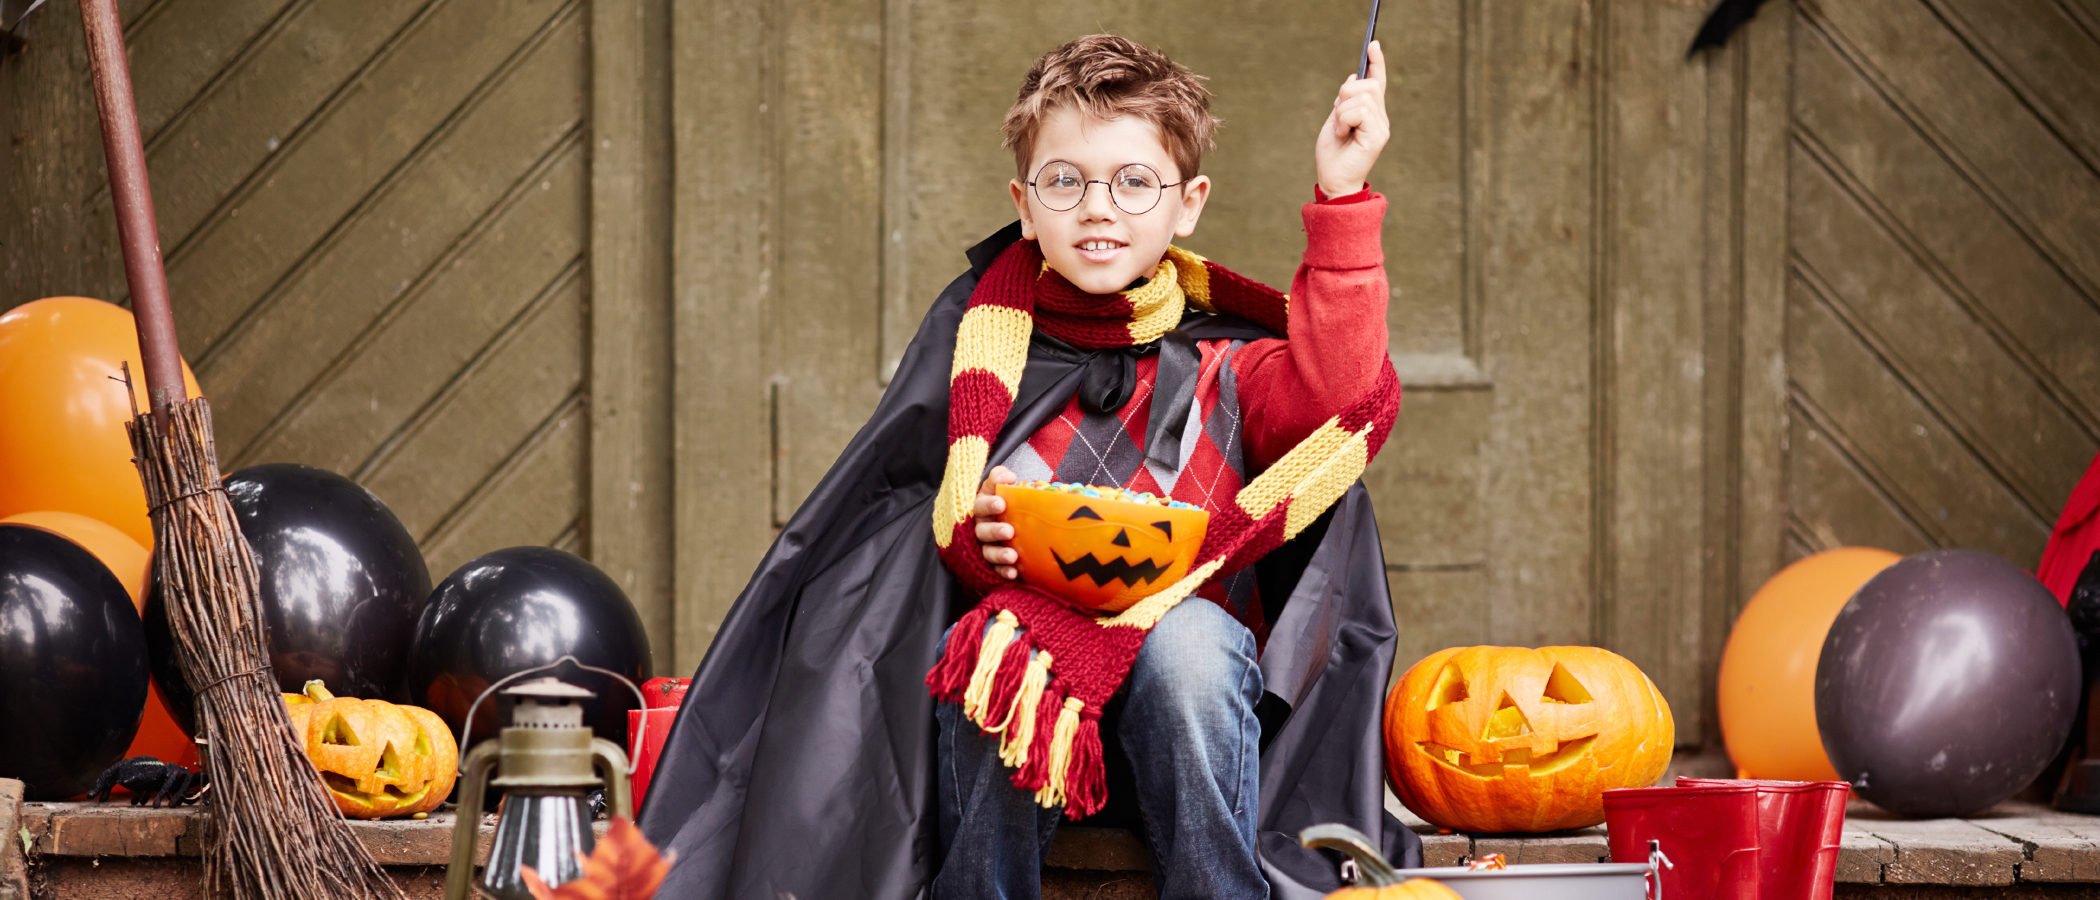 Los disfraces de Halloween más originales para niños y adolescentes